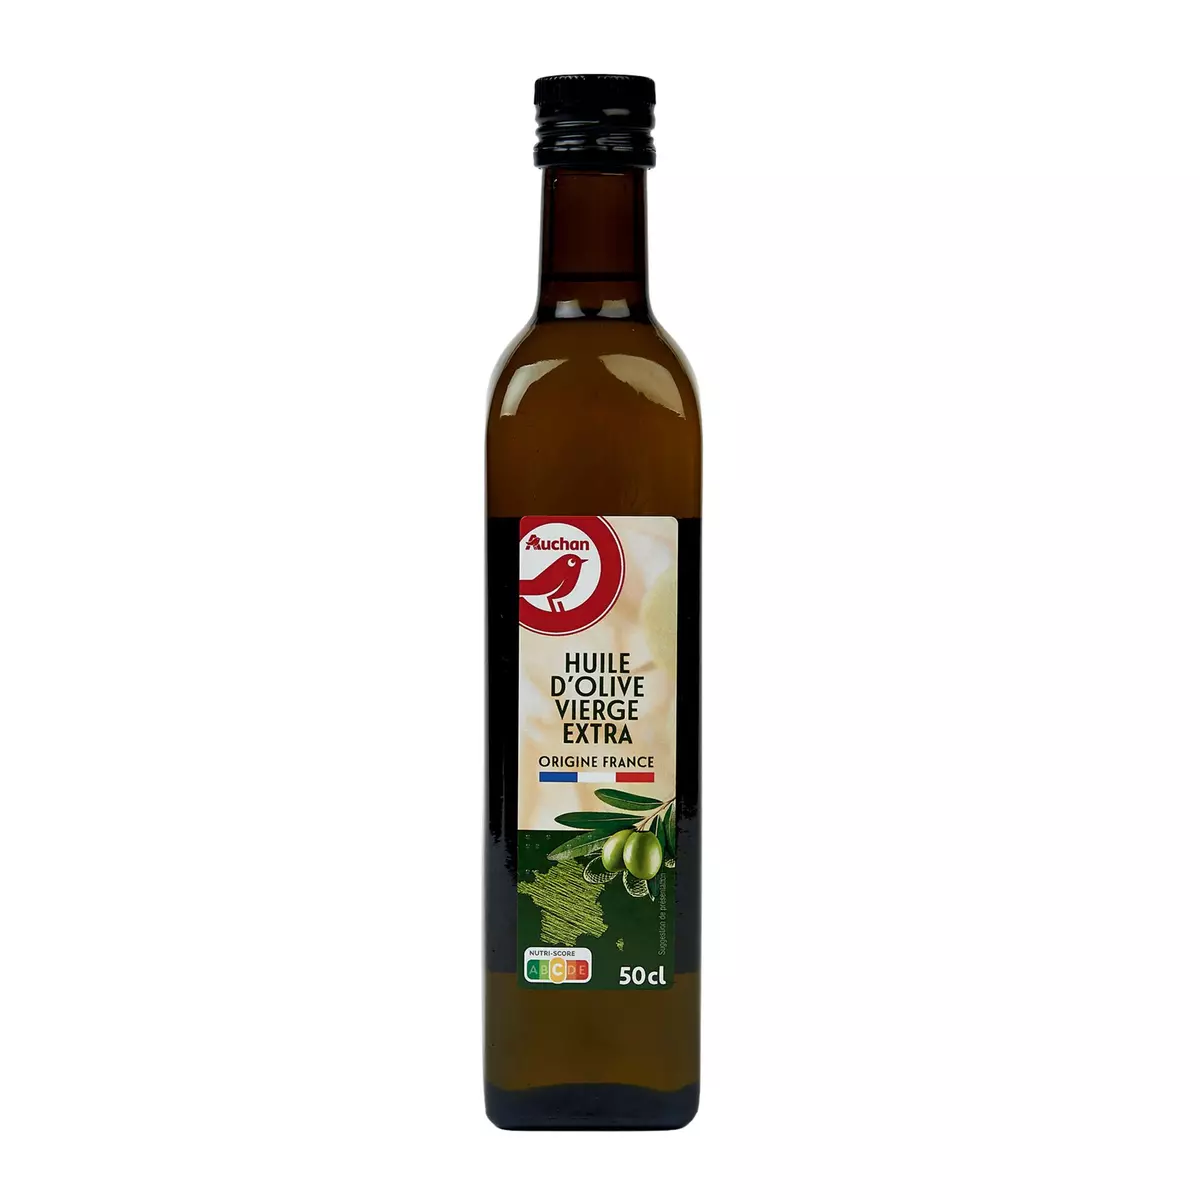 AUCHAN Huile d'olive vierge extra classique origine France 50cl